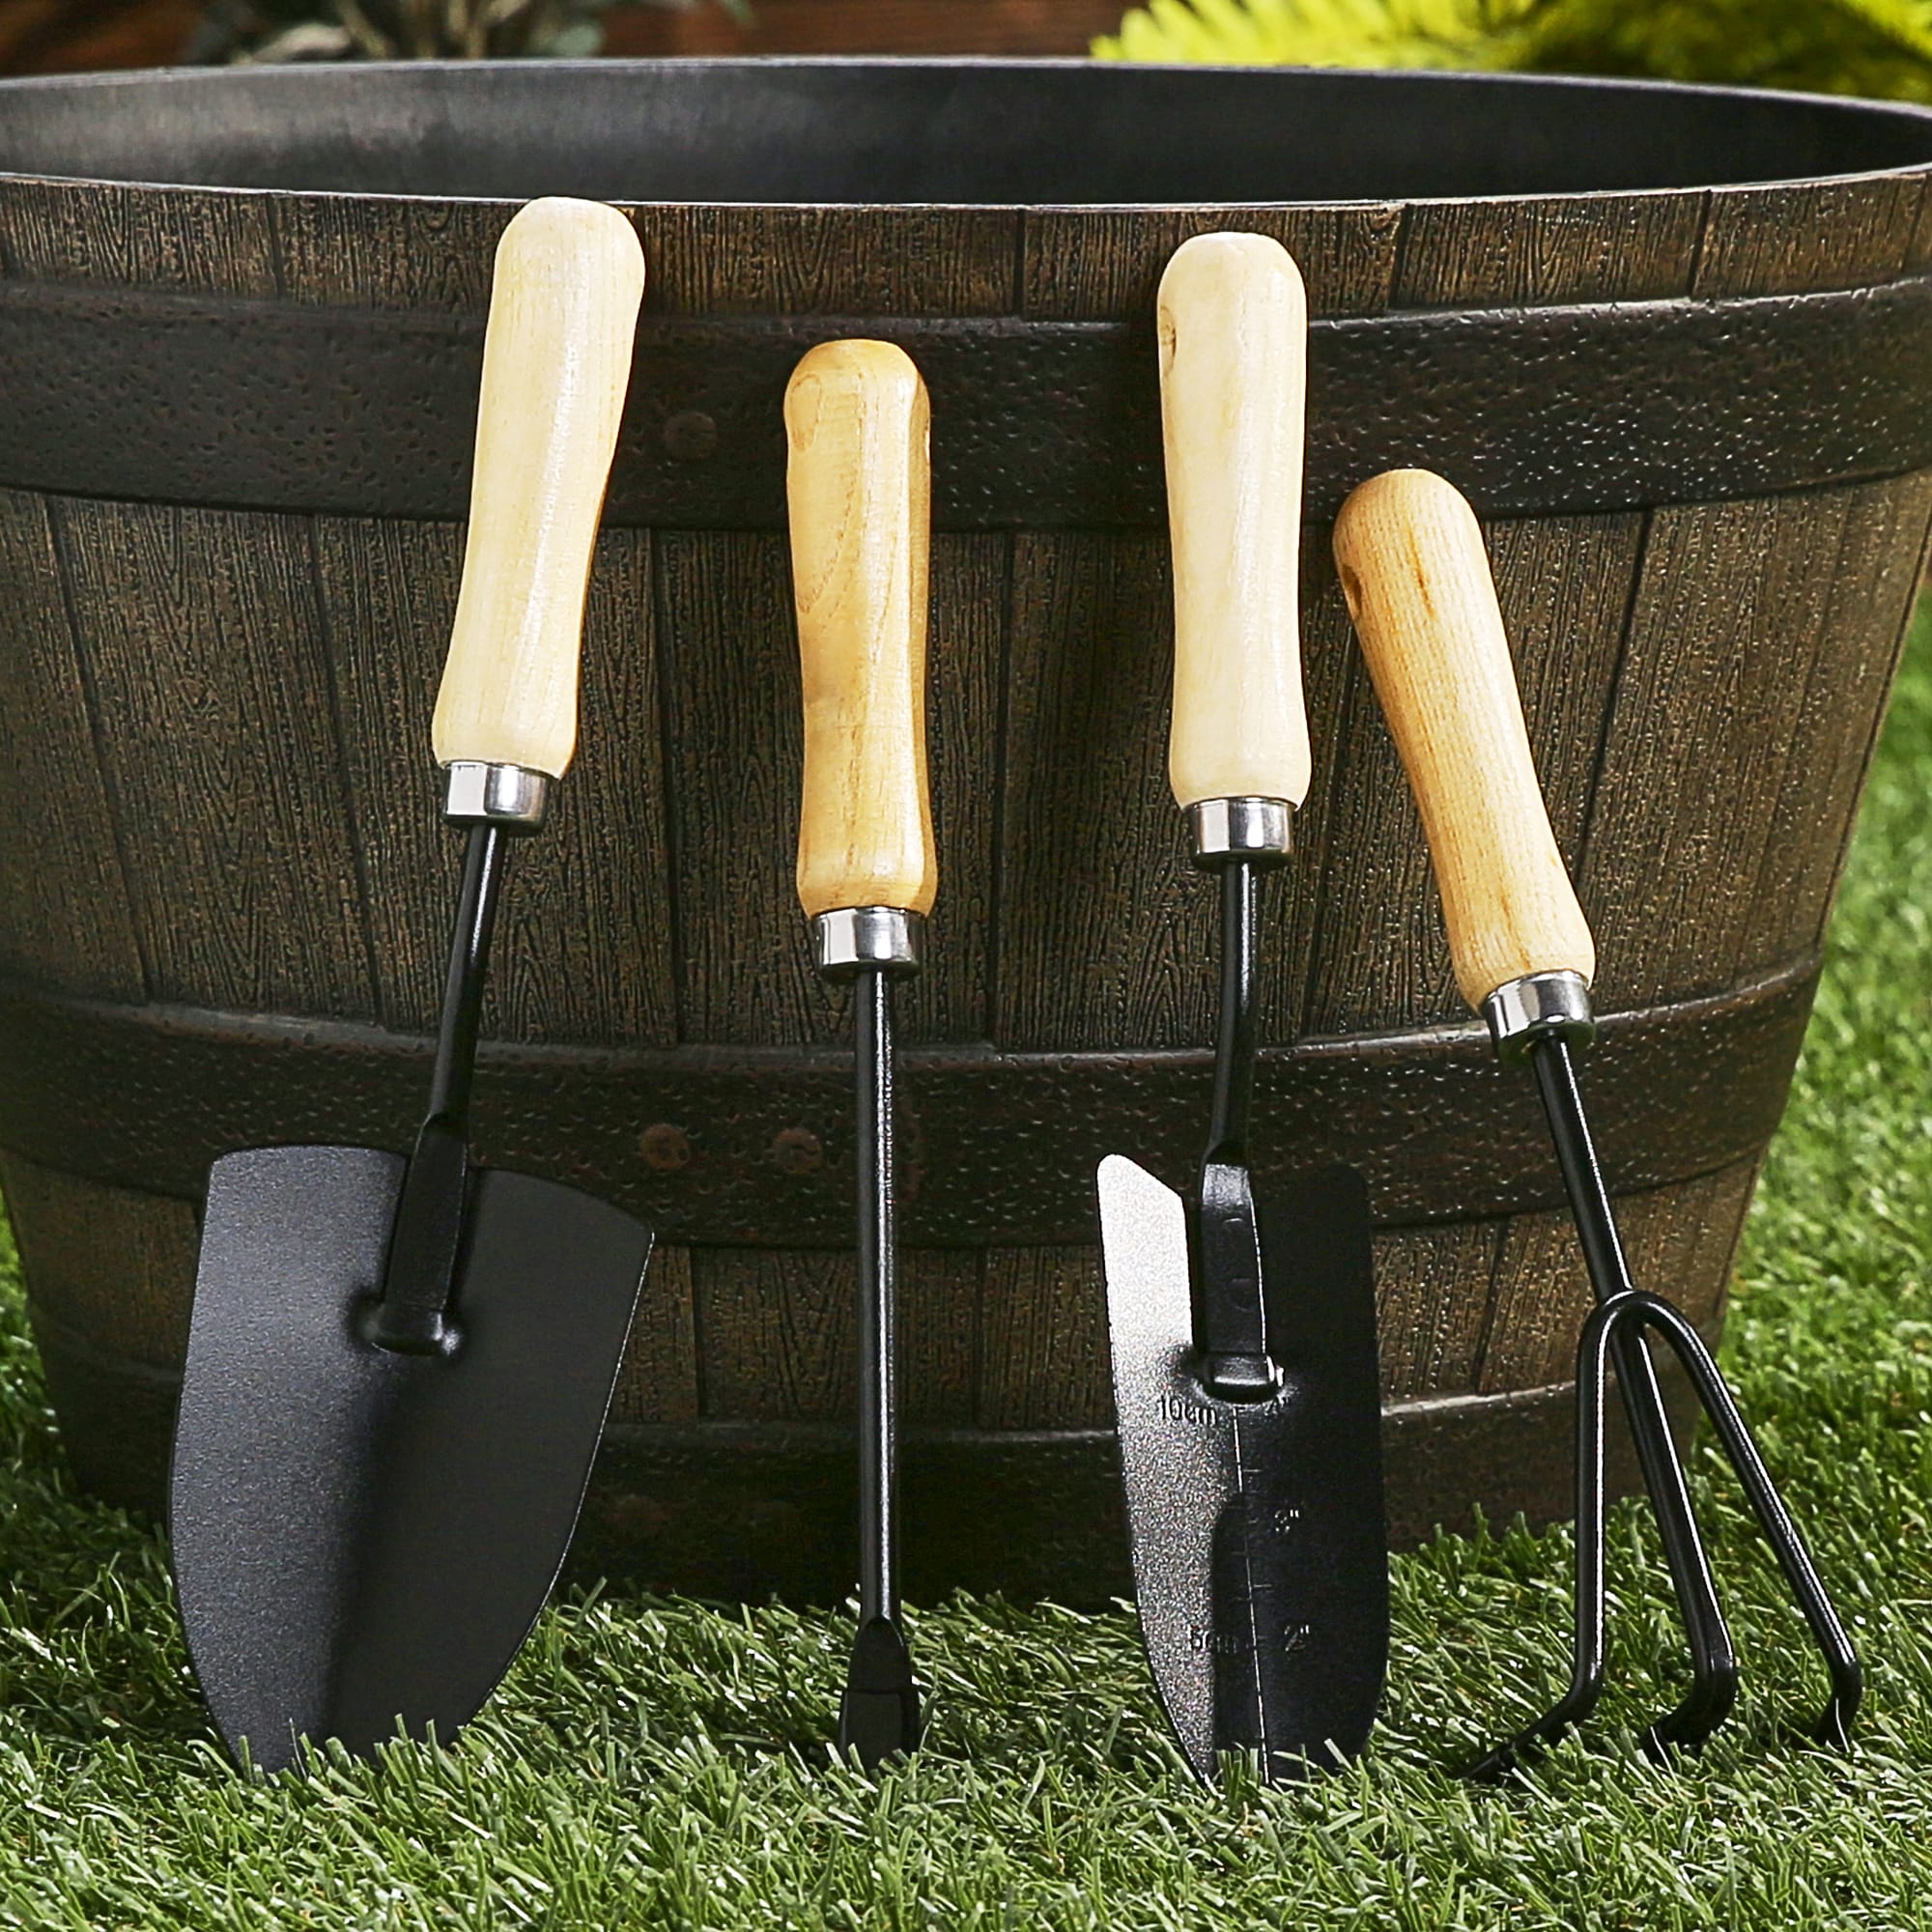 Yardsmith Gardening Hand Tool Kit At